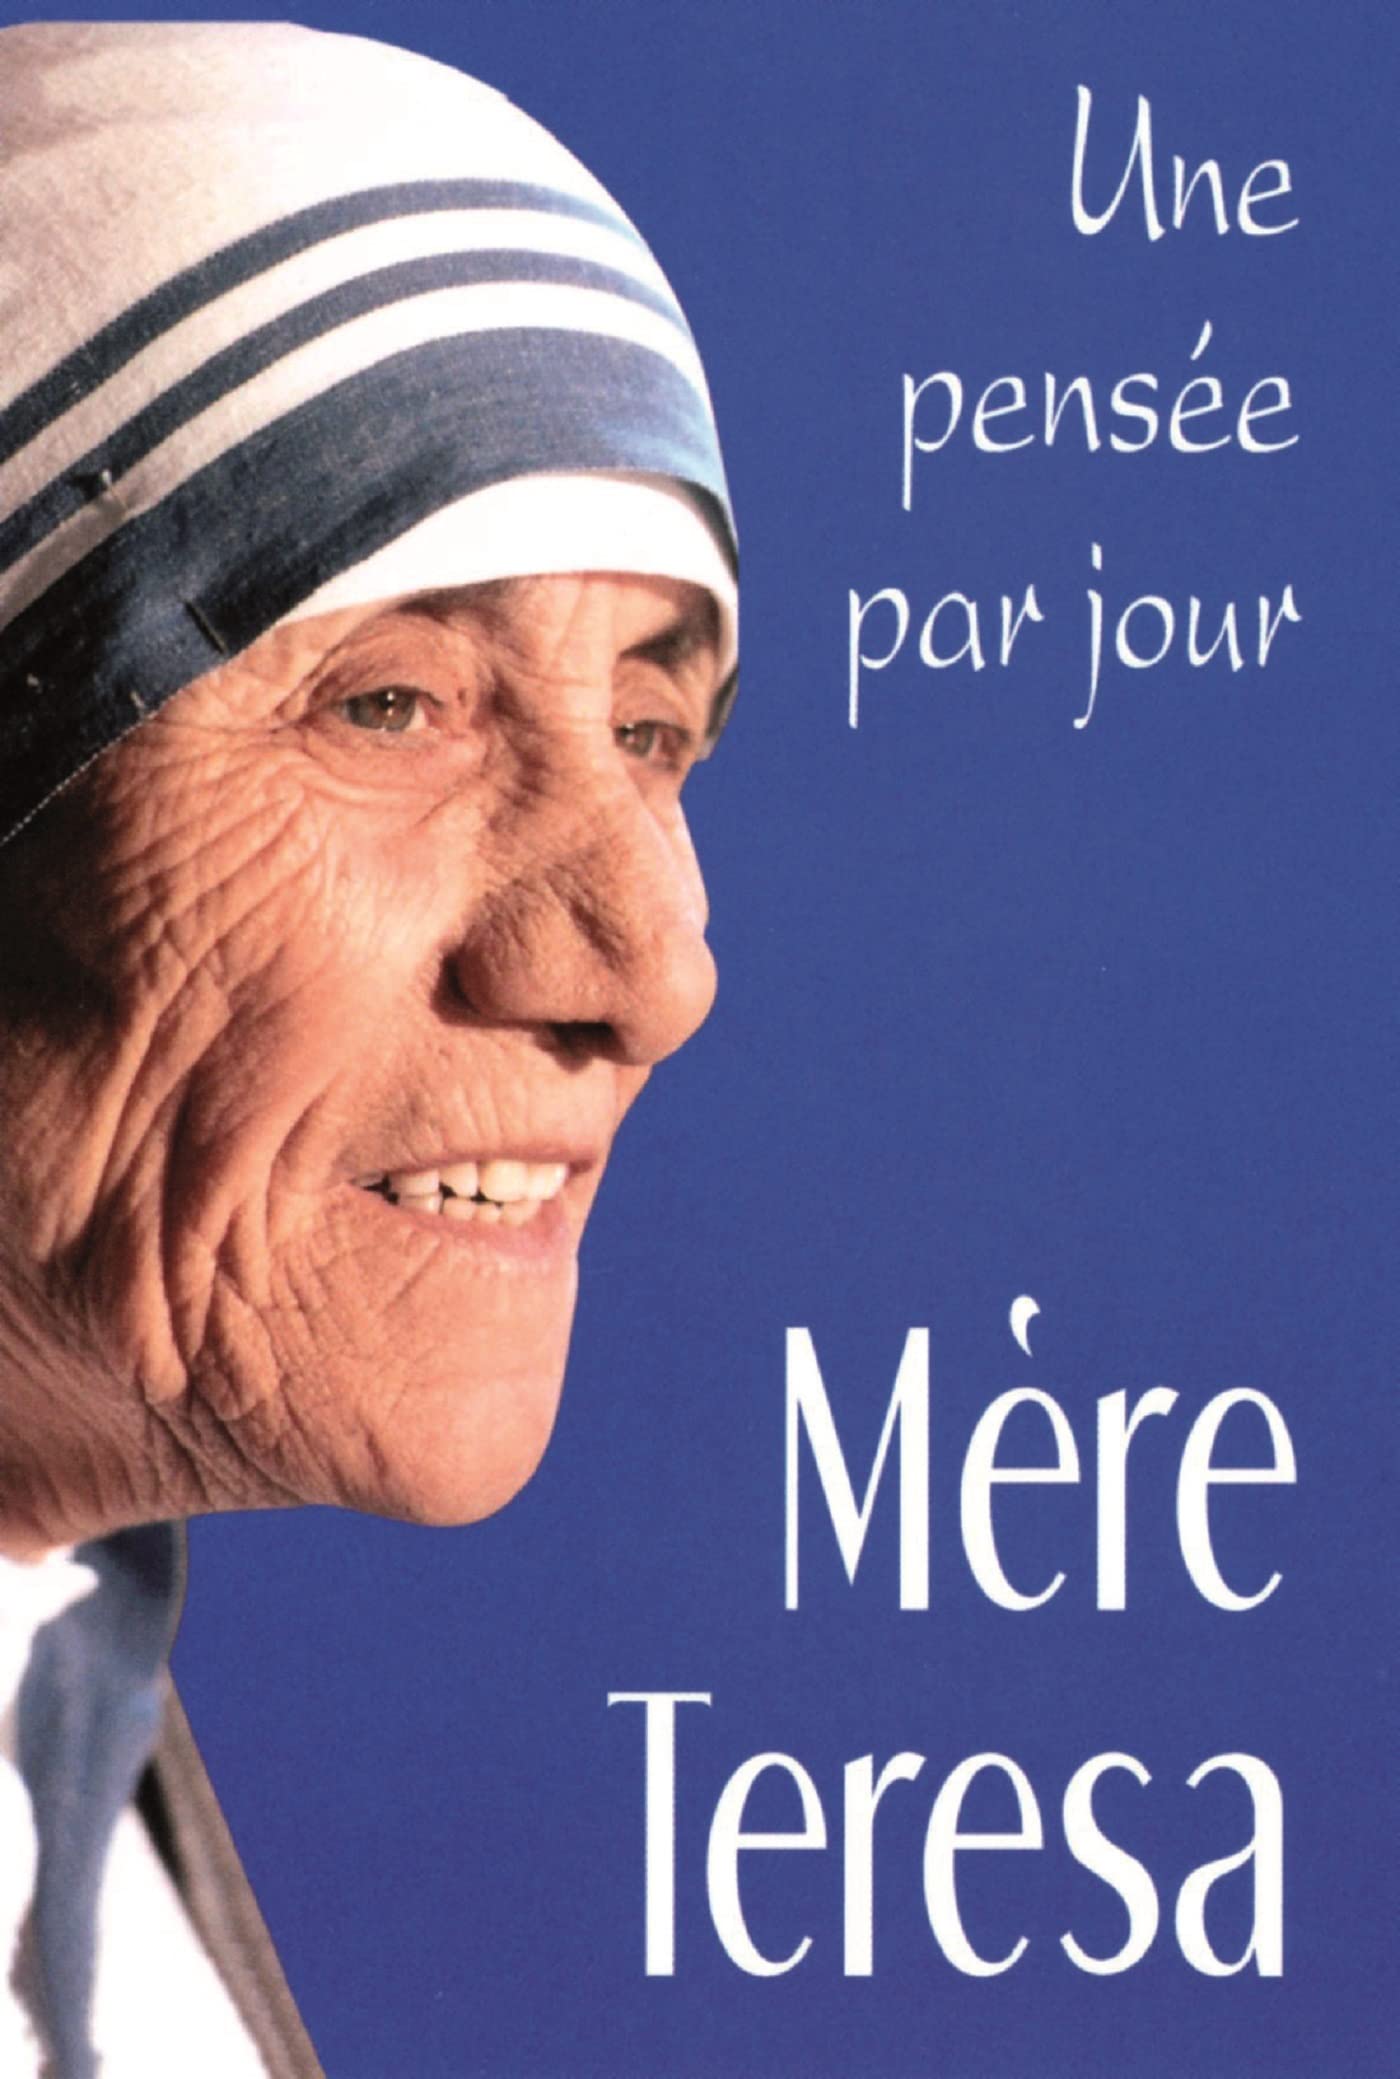 Une pensée par jour : Mère Teresa : Une pensée par jour - Mère Teresa